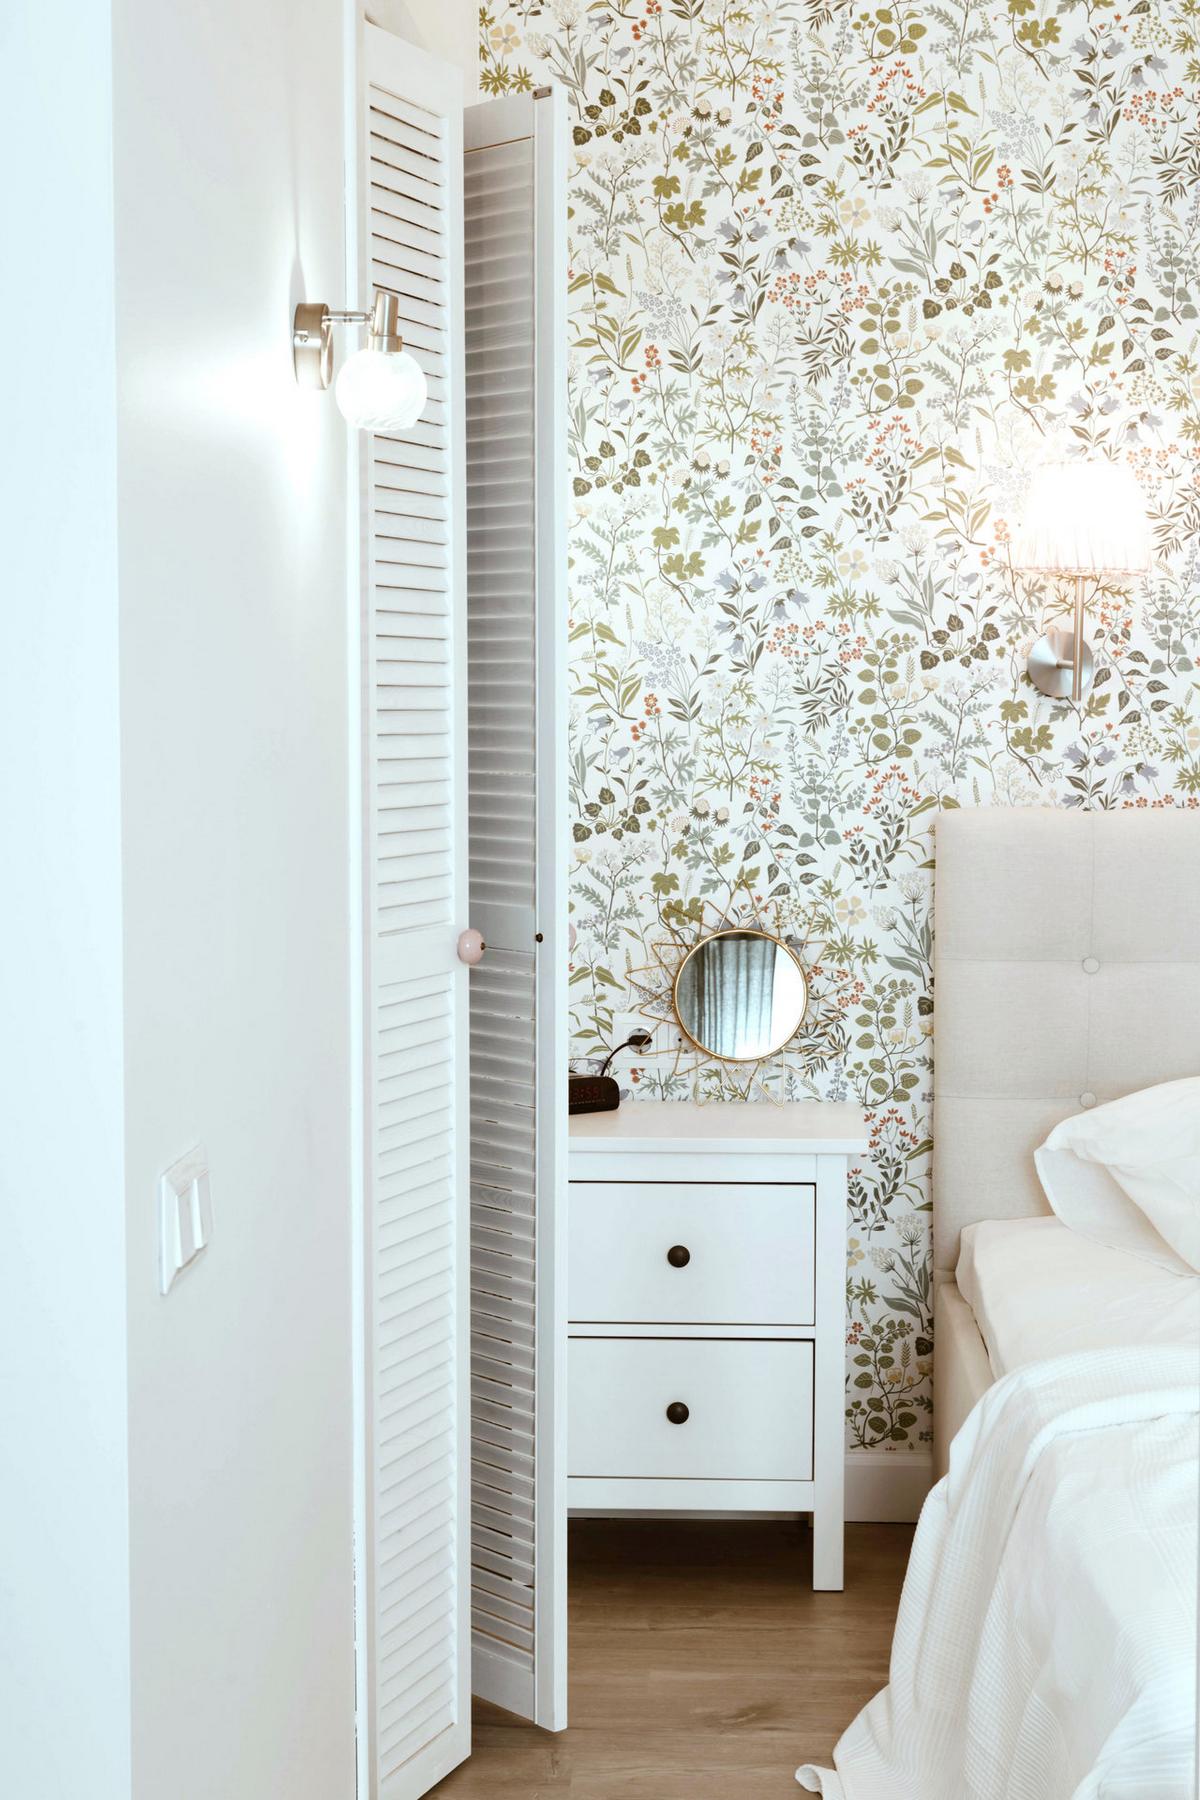 Những chiếc đèn gắn tường ở phía trên đầu giường và bên cạnh tủ quần áo, kết hợp chiếc gương tròn nhỏ trên táp đầu giường giúp tăng thêm nguồn sáng và sự ấm áp cho không gian thư giãn lúc đêm về.